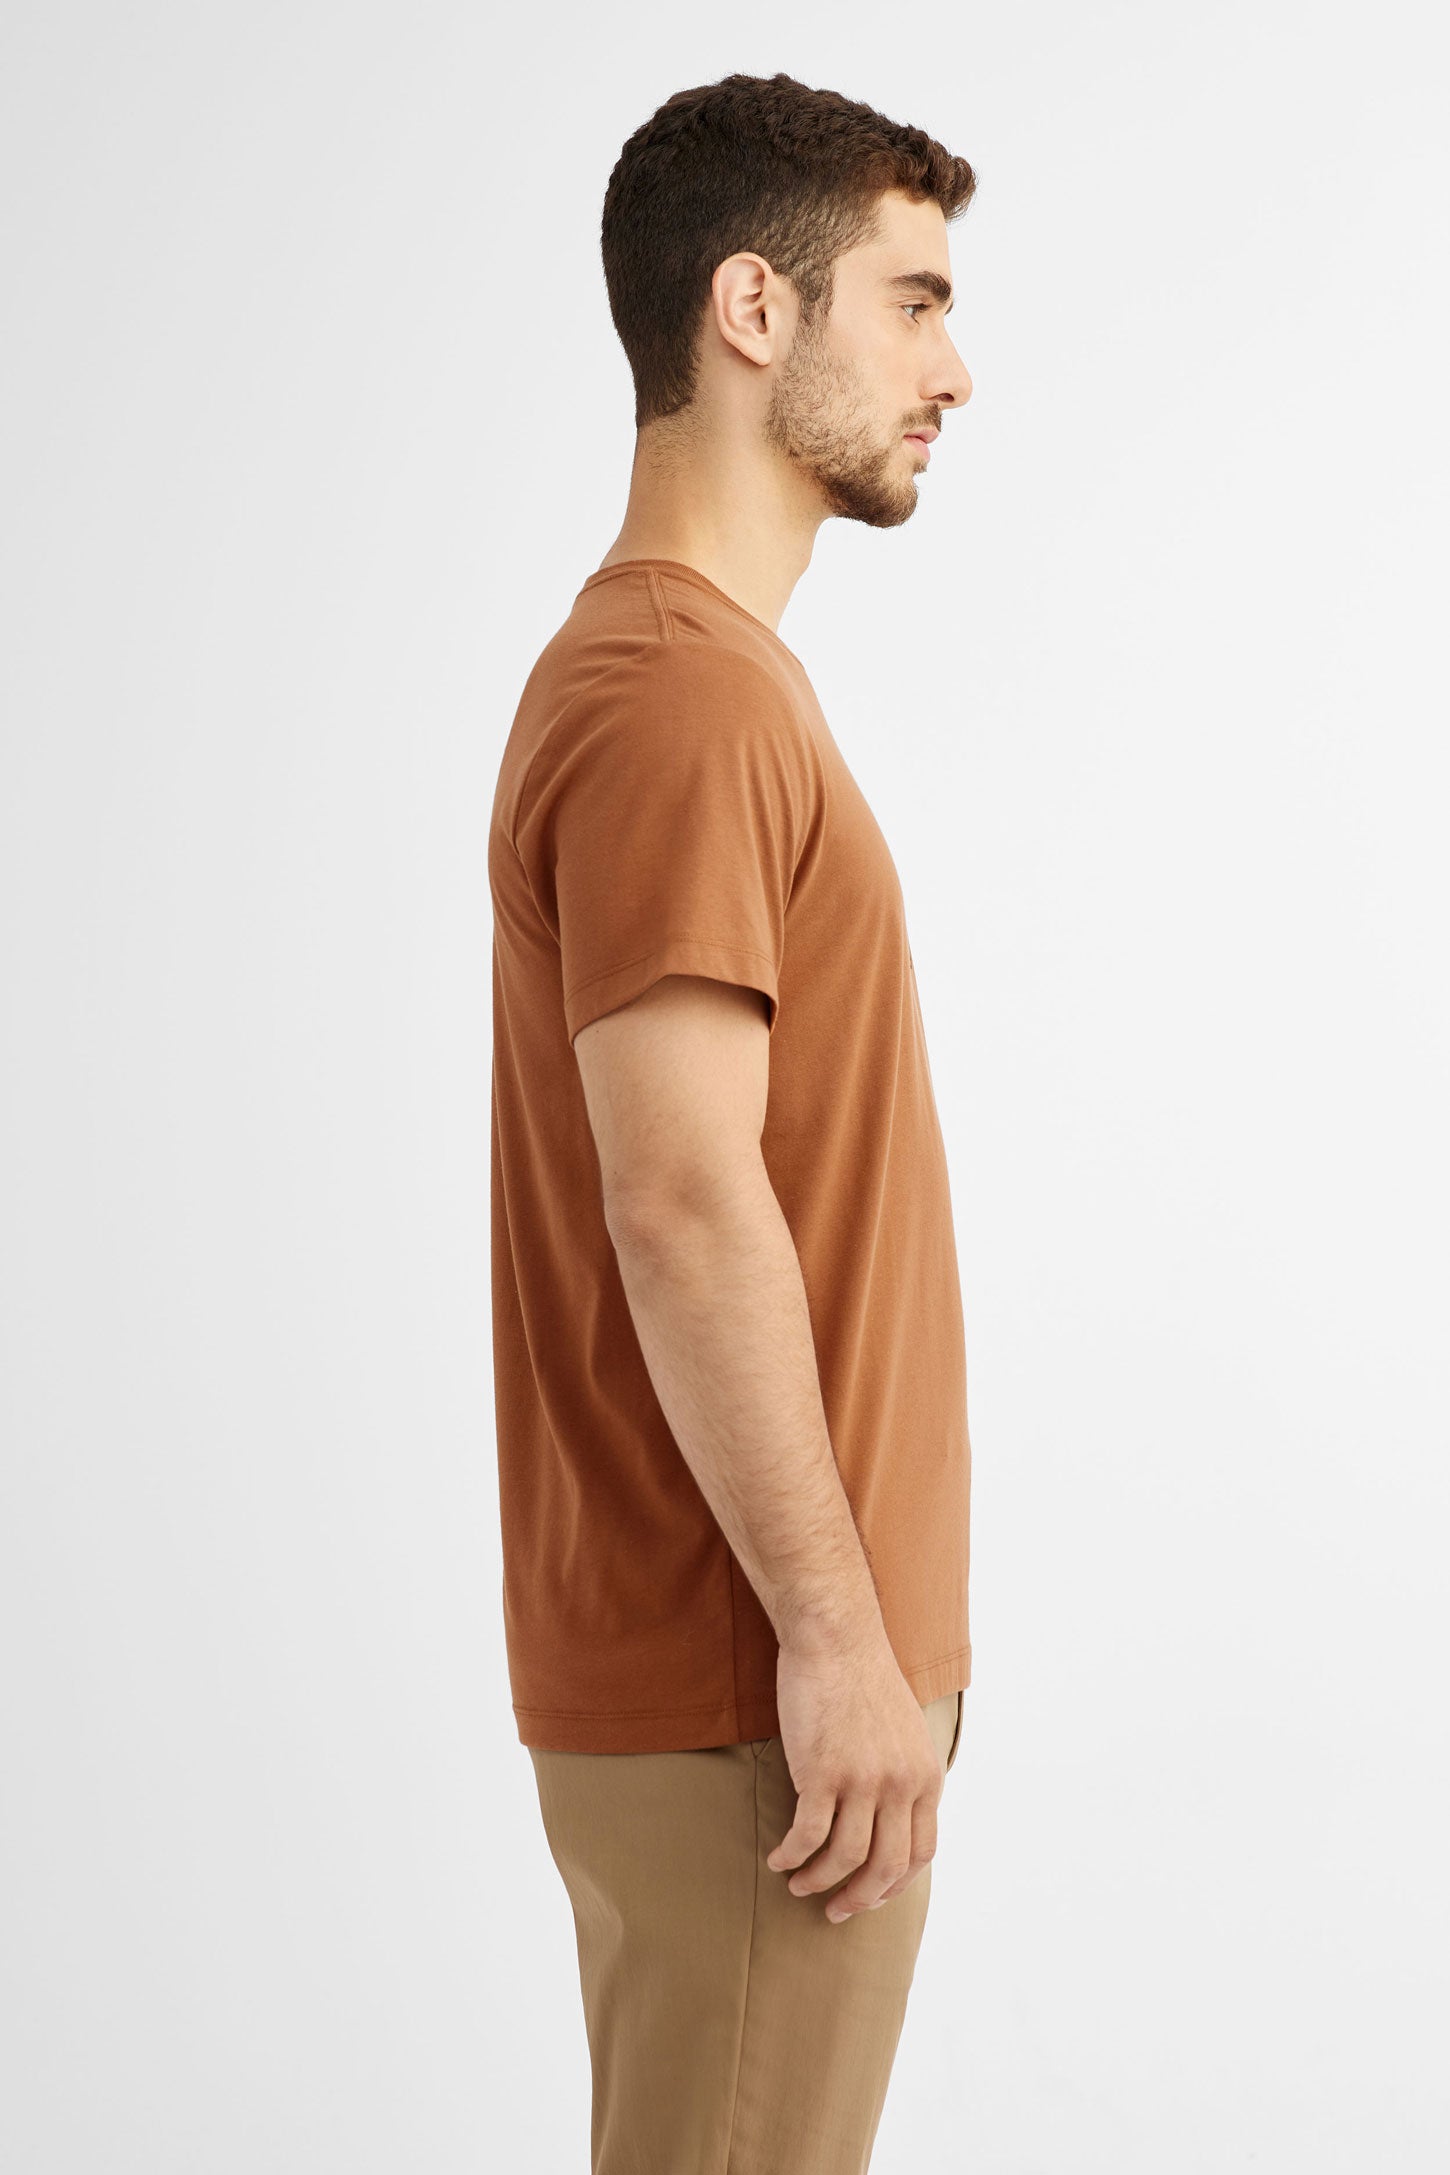 Duos futés, T-shirt coton bio BM, 2/50$ - Homme && ORANGE